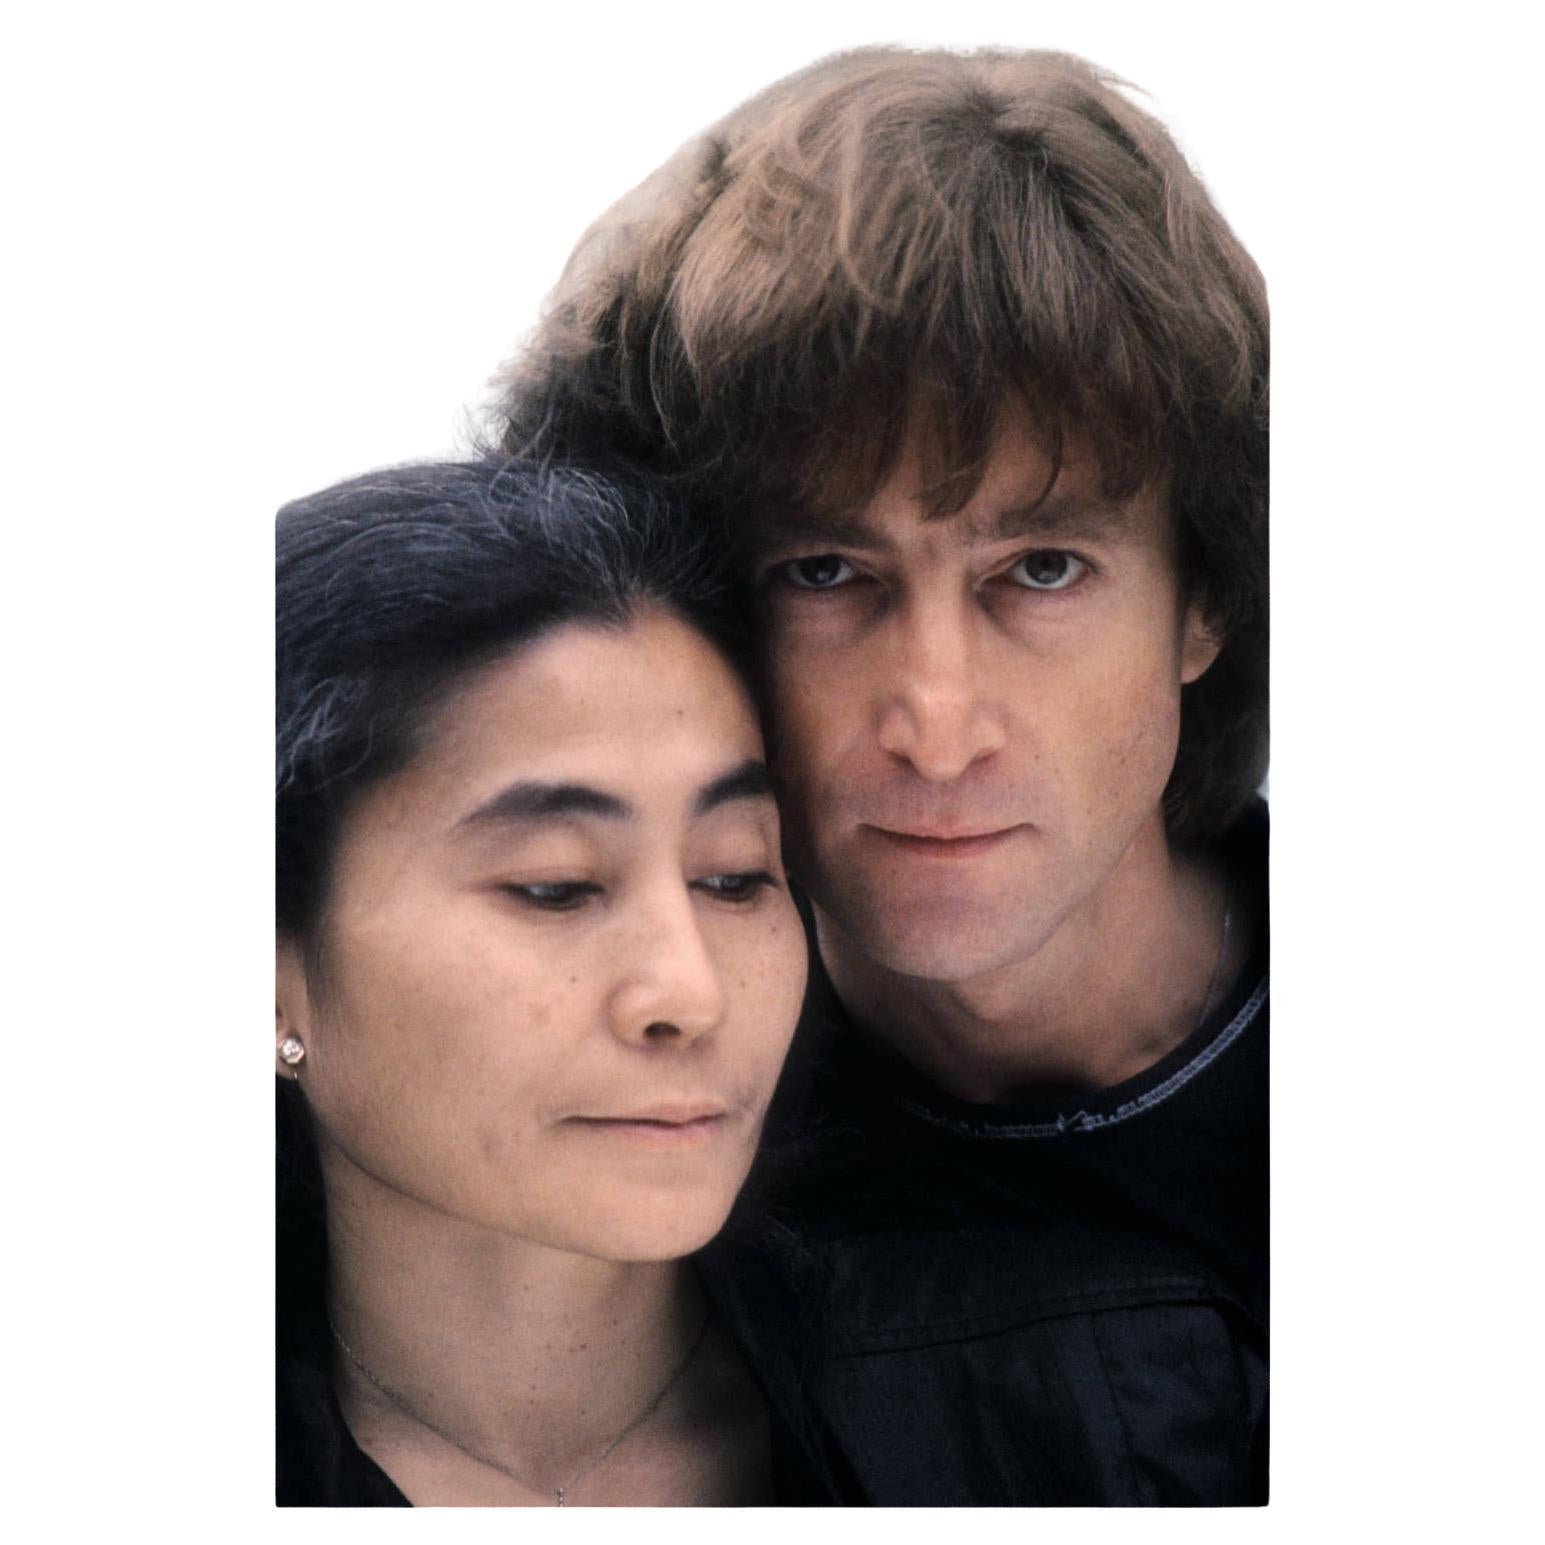 Partner im Leben und in der Kunst.
Intime Porträts von John und Yoko.

Kishin Shinoyama ist für seine sinnlichen, provokativen Bilder bekannt und einer der umstrittensten und gefeiertsten Künstler Japans, der von Kritikern gefeiert und